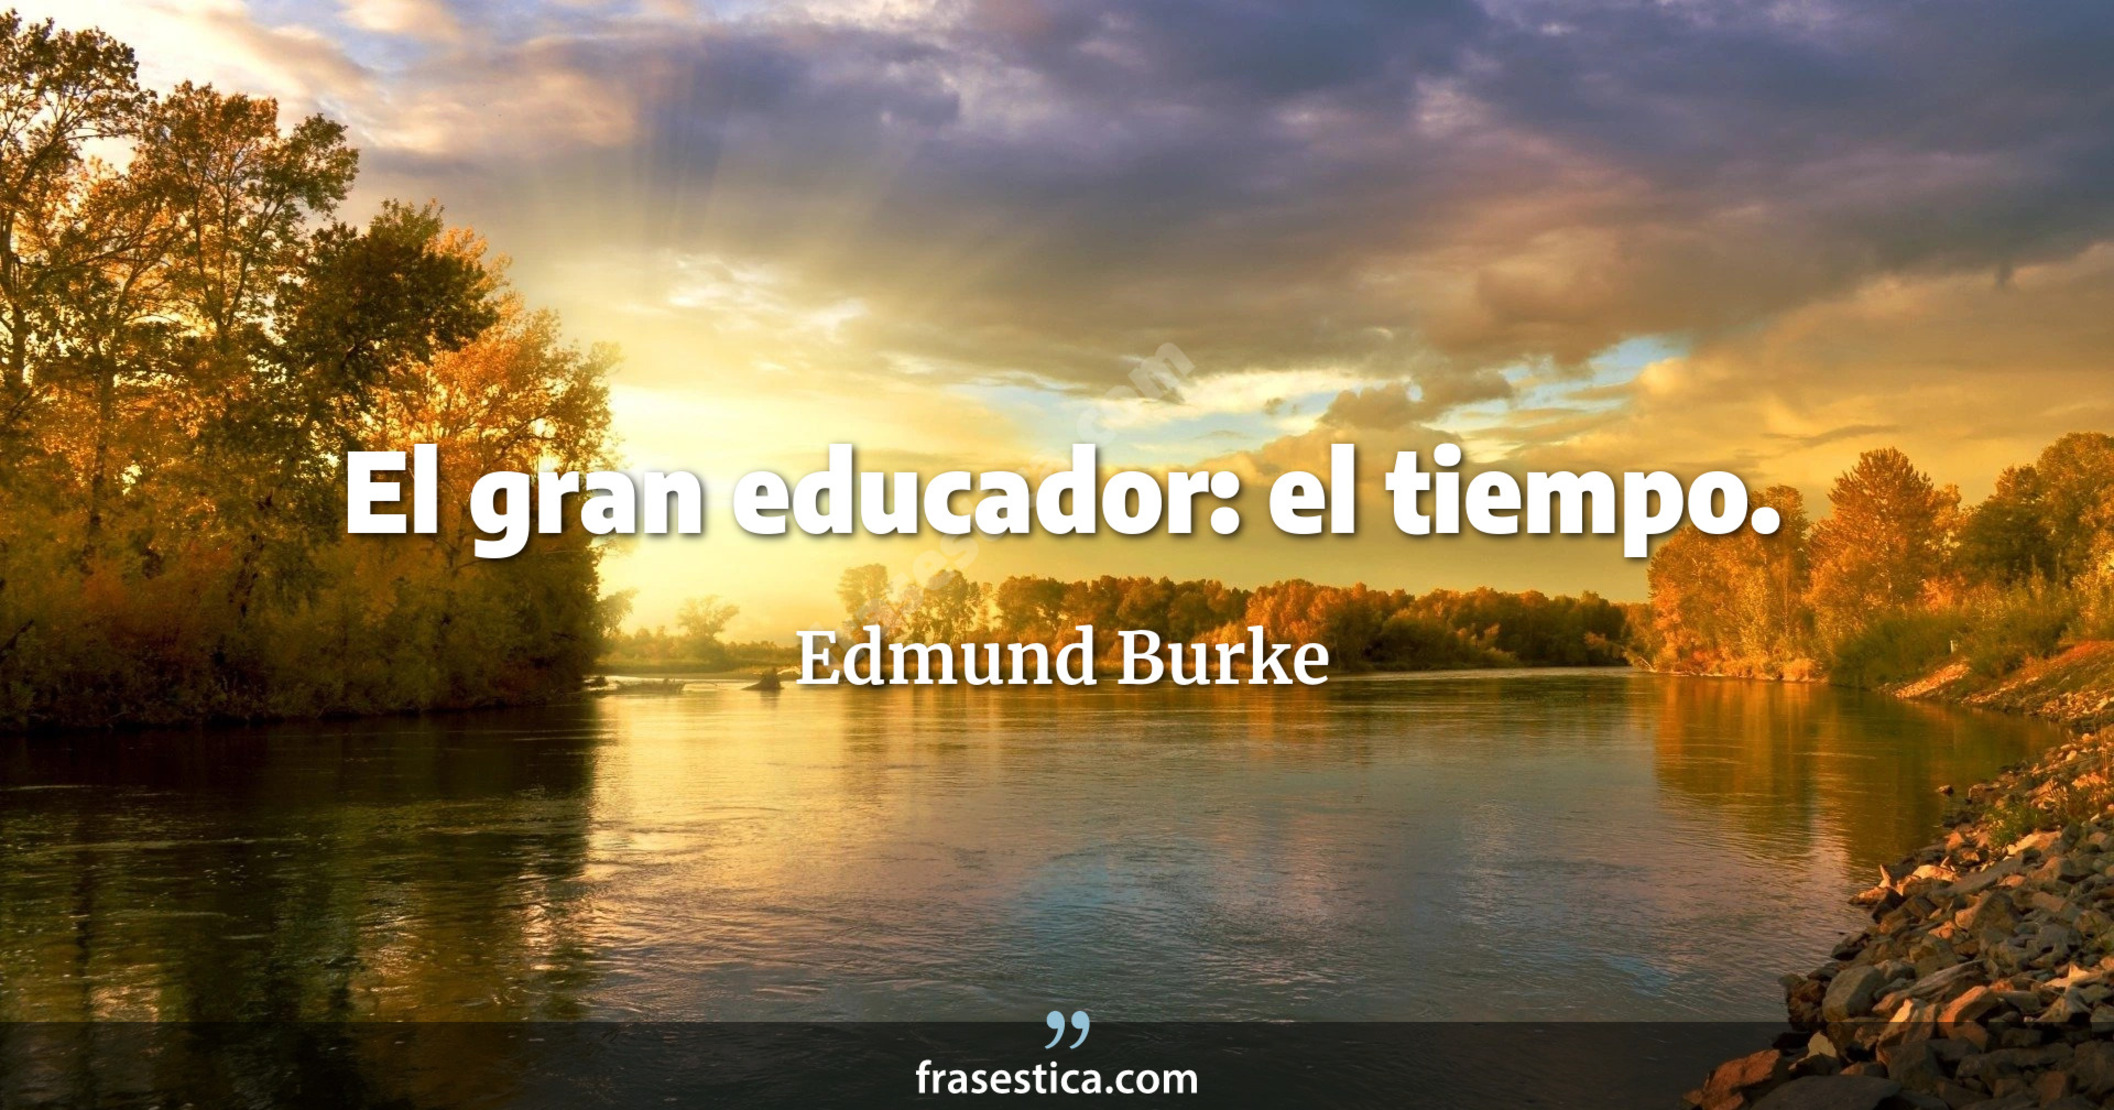 El gran educador: el tiempo. - Edmund Burke